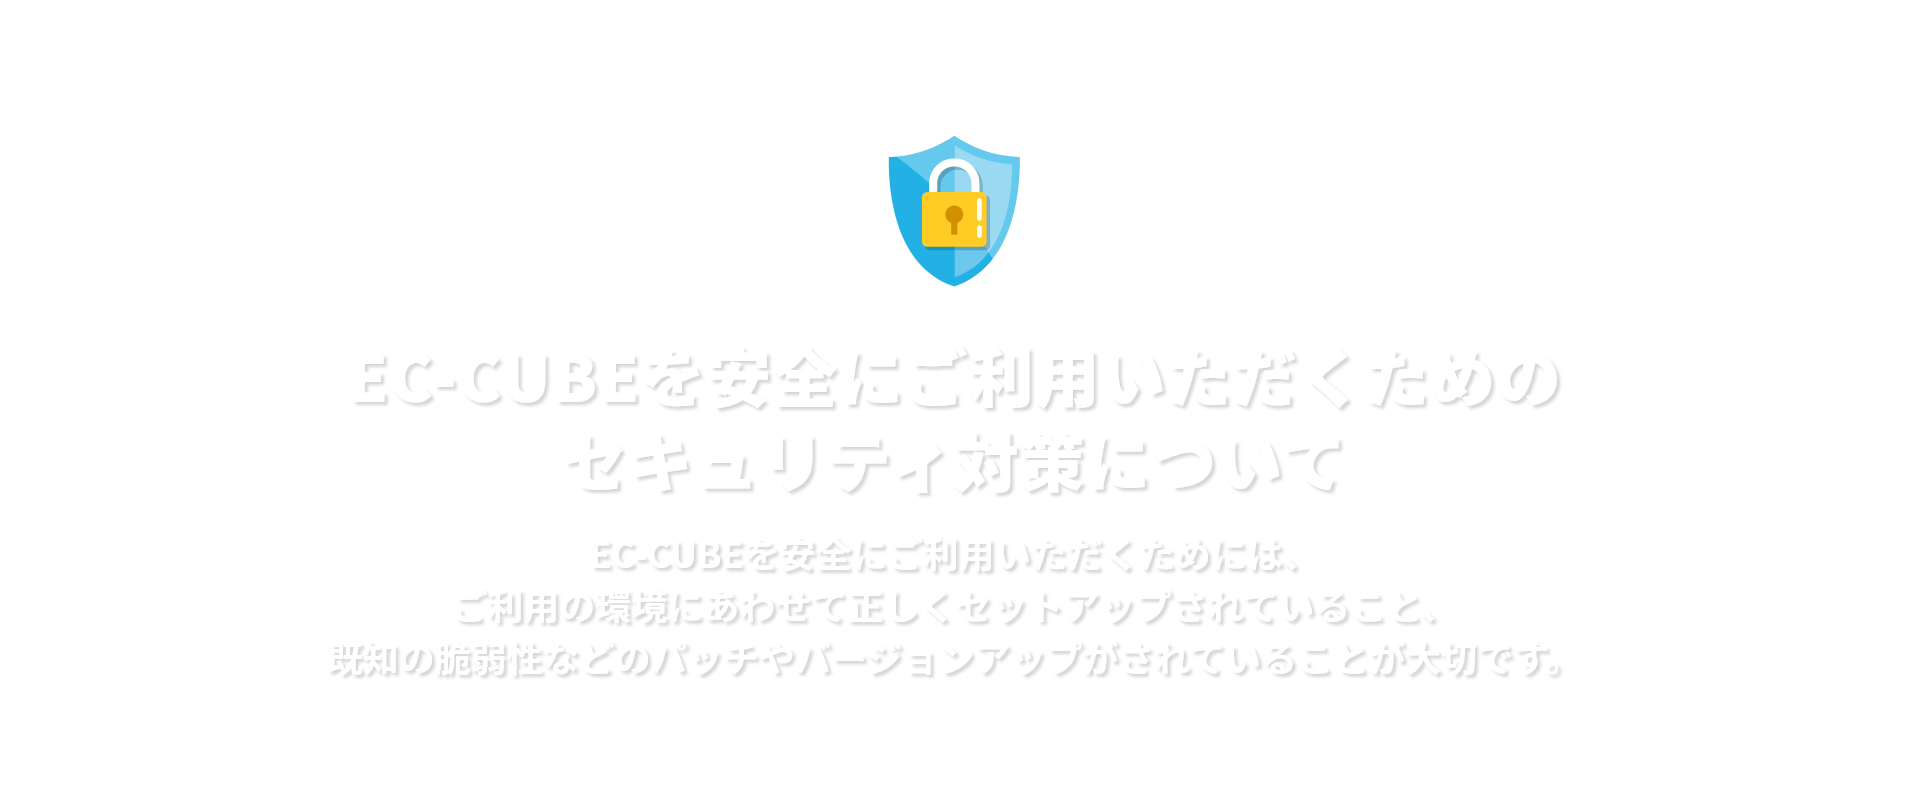 セキュリティ対策についてEC-CUBEを安全にご利用いただくためには、ご利用の環境にあわせて正しくセットアップされていること、既知の脆弱性などのパッチやバージョンアップがされていることが大切です。